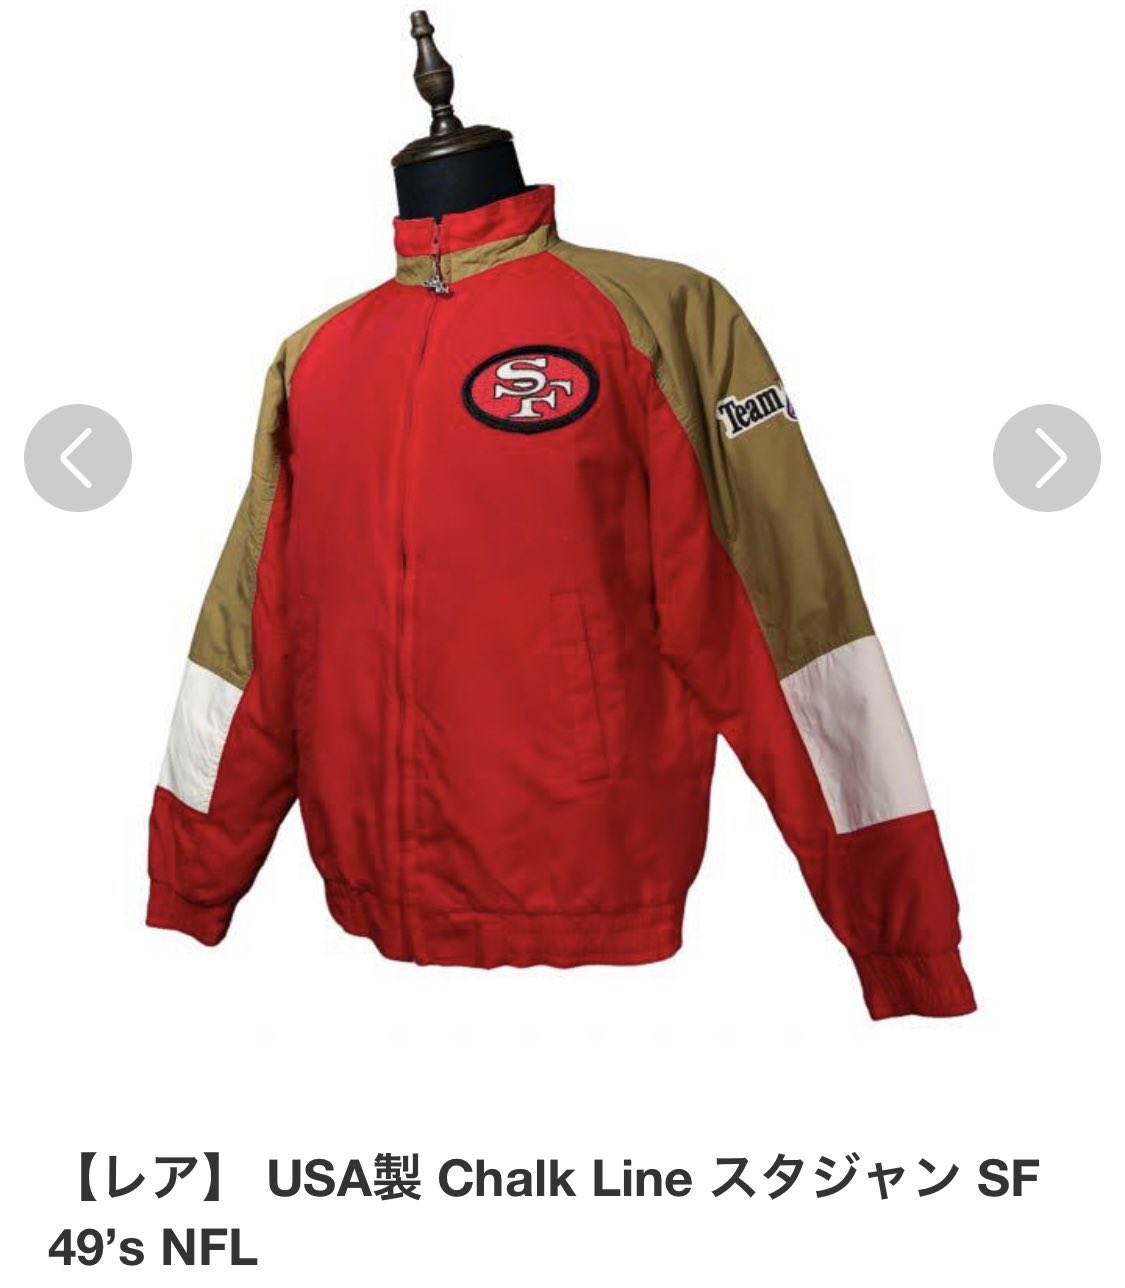 USA製 chalk line NFL 49ers スタジャン Mサイズ - ジャケット・アウター